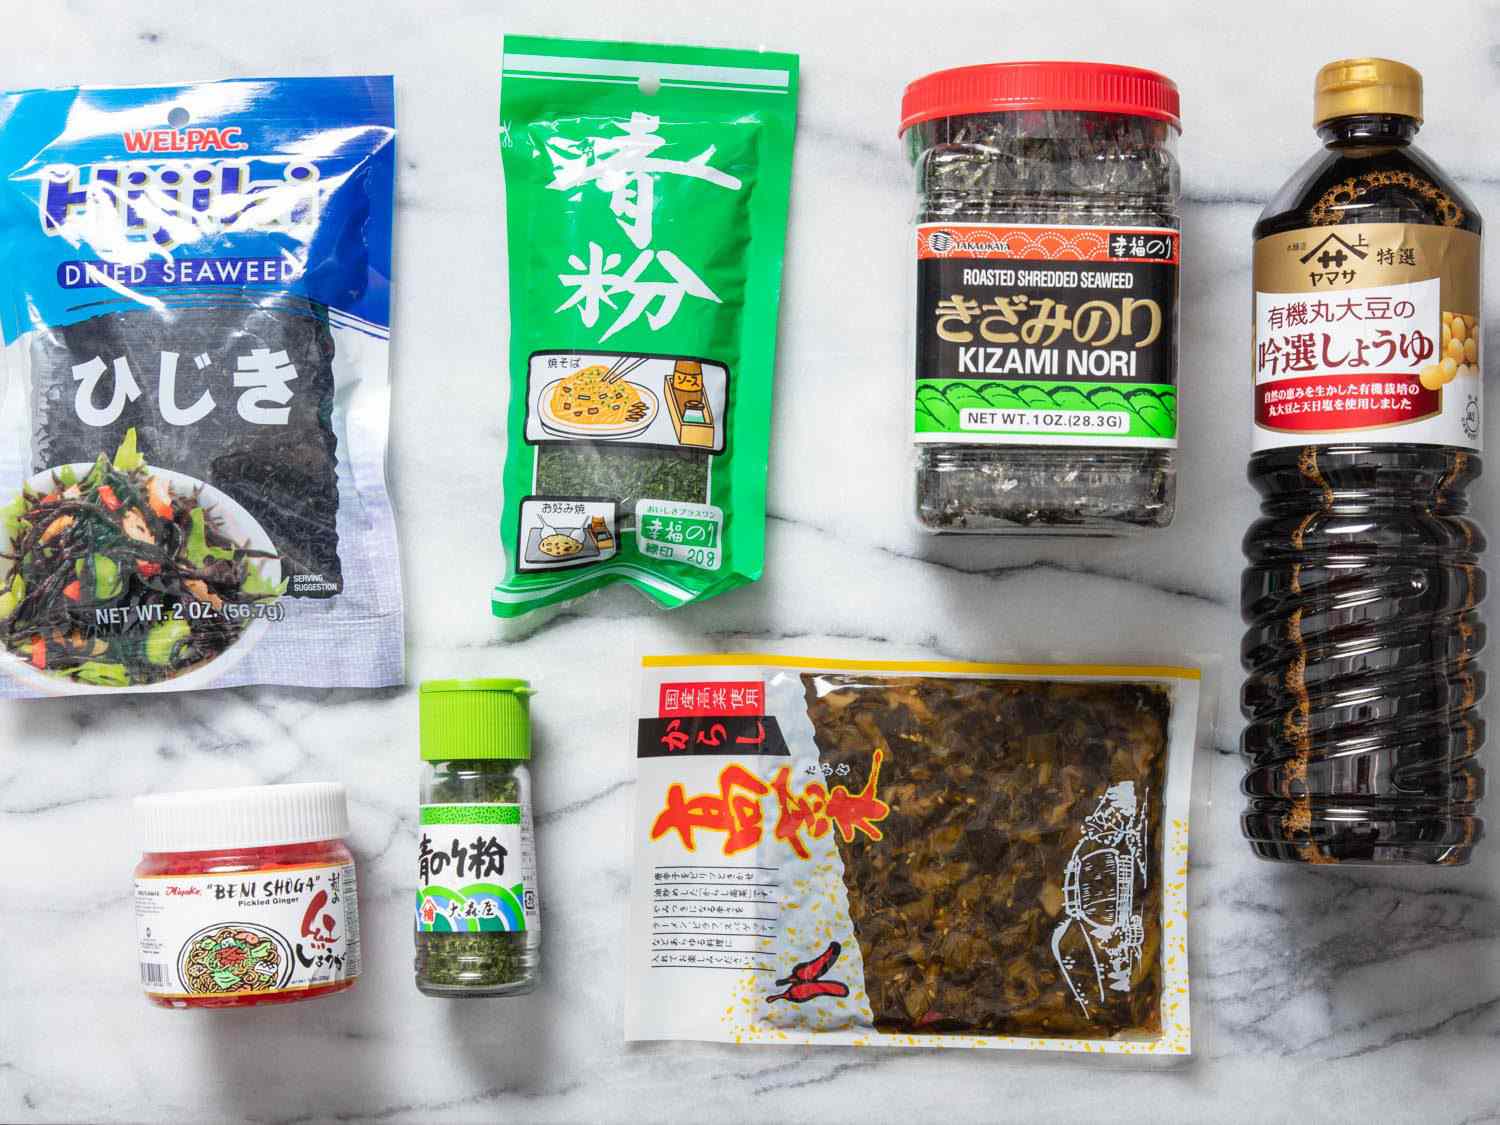 选用有助于制作米饭的日本食品储藏室产品，包括海草(一种干海草)、青菜(一种干海草)、腌姜、腌芥菜、海苔丝和酱油